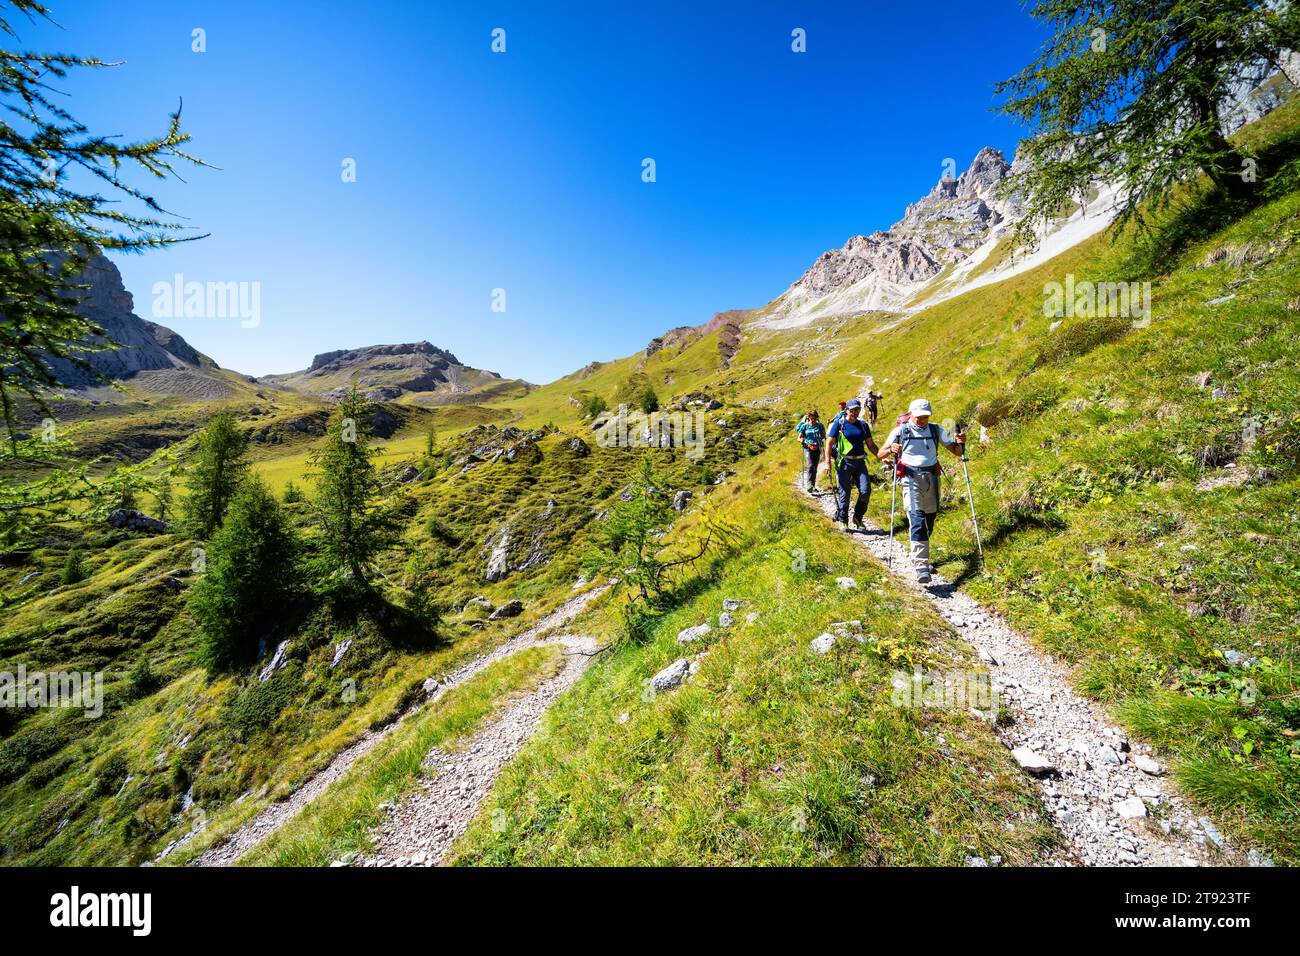 Escursione sull'alta via 2, cima del passo della forca Rossa sullo sfondo, vicino a Rocca Pietore, Italia Foto Stock